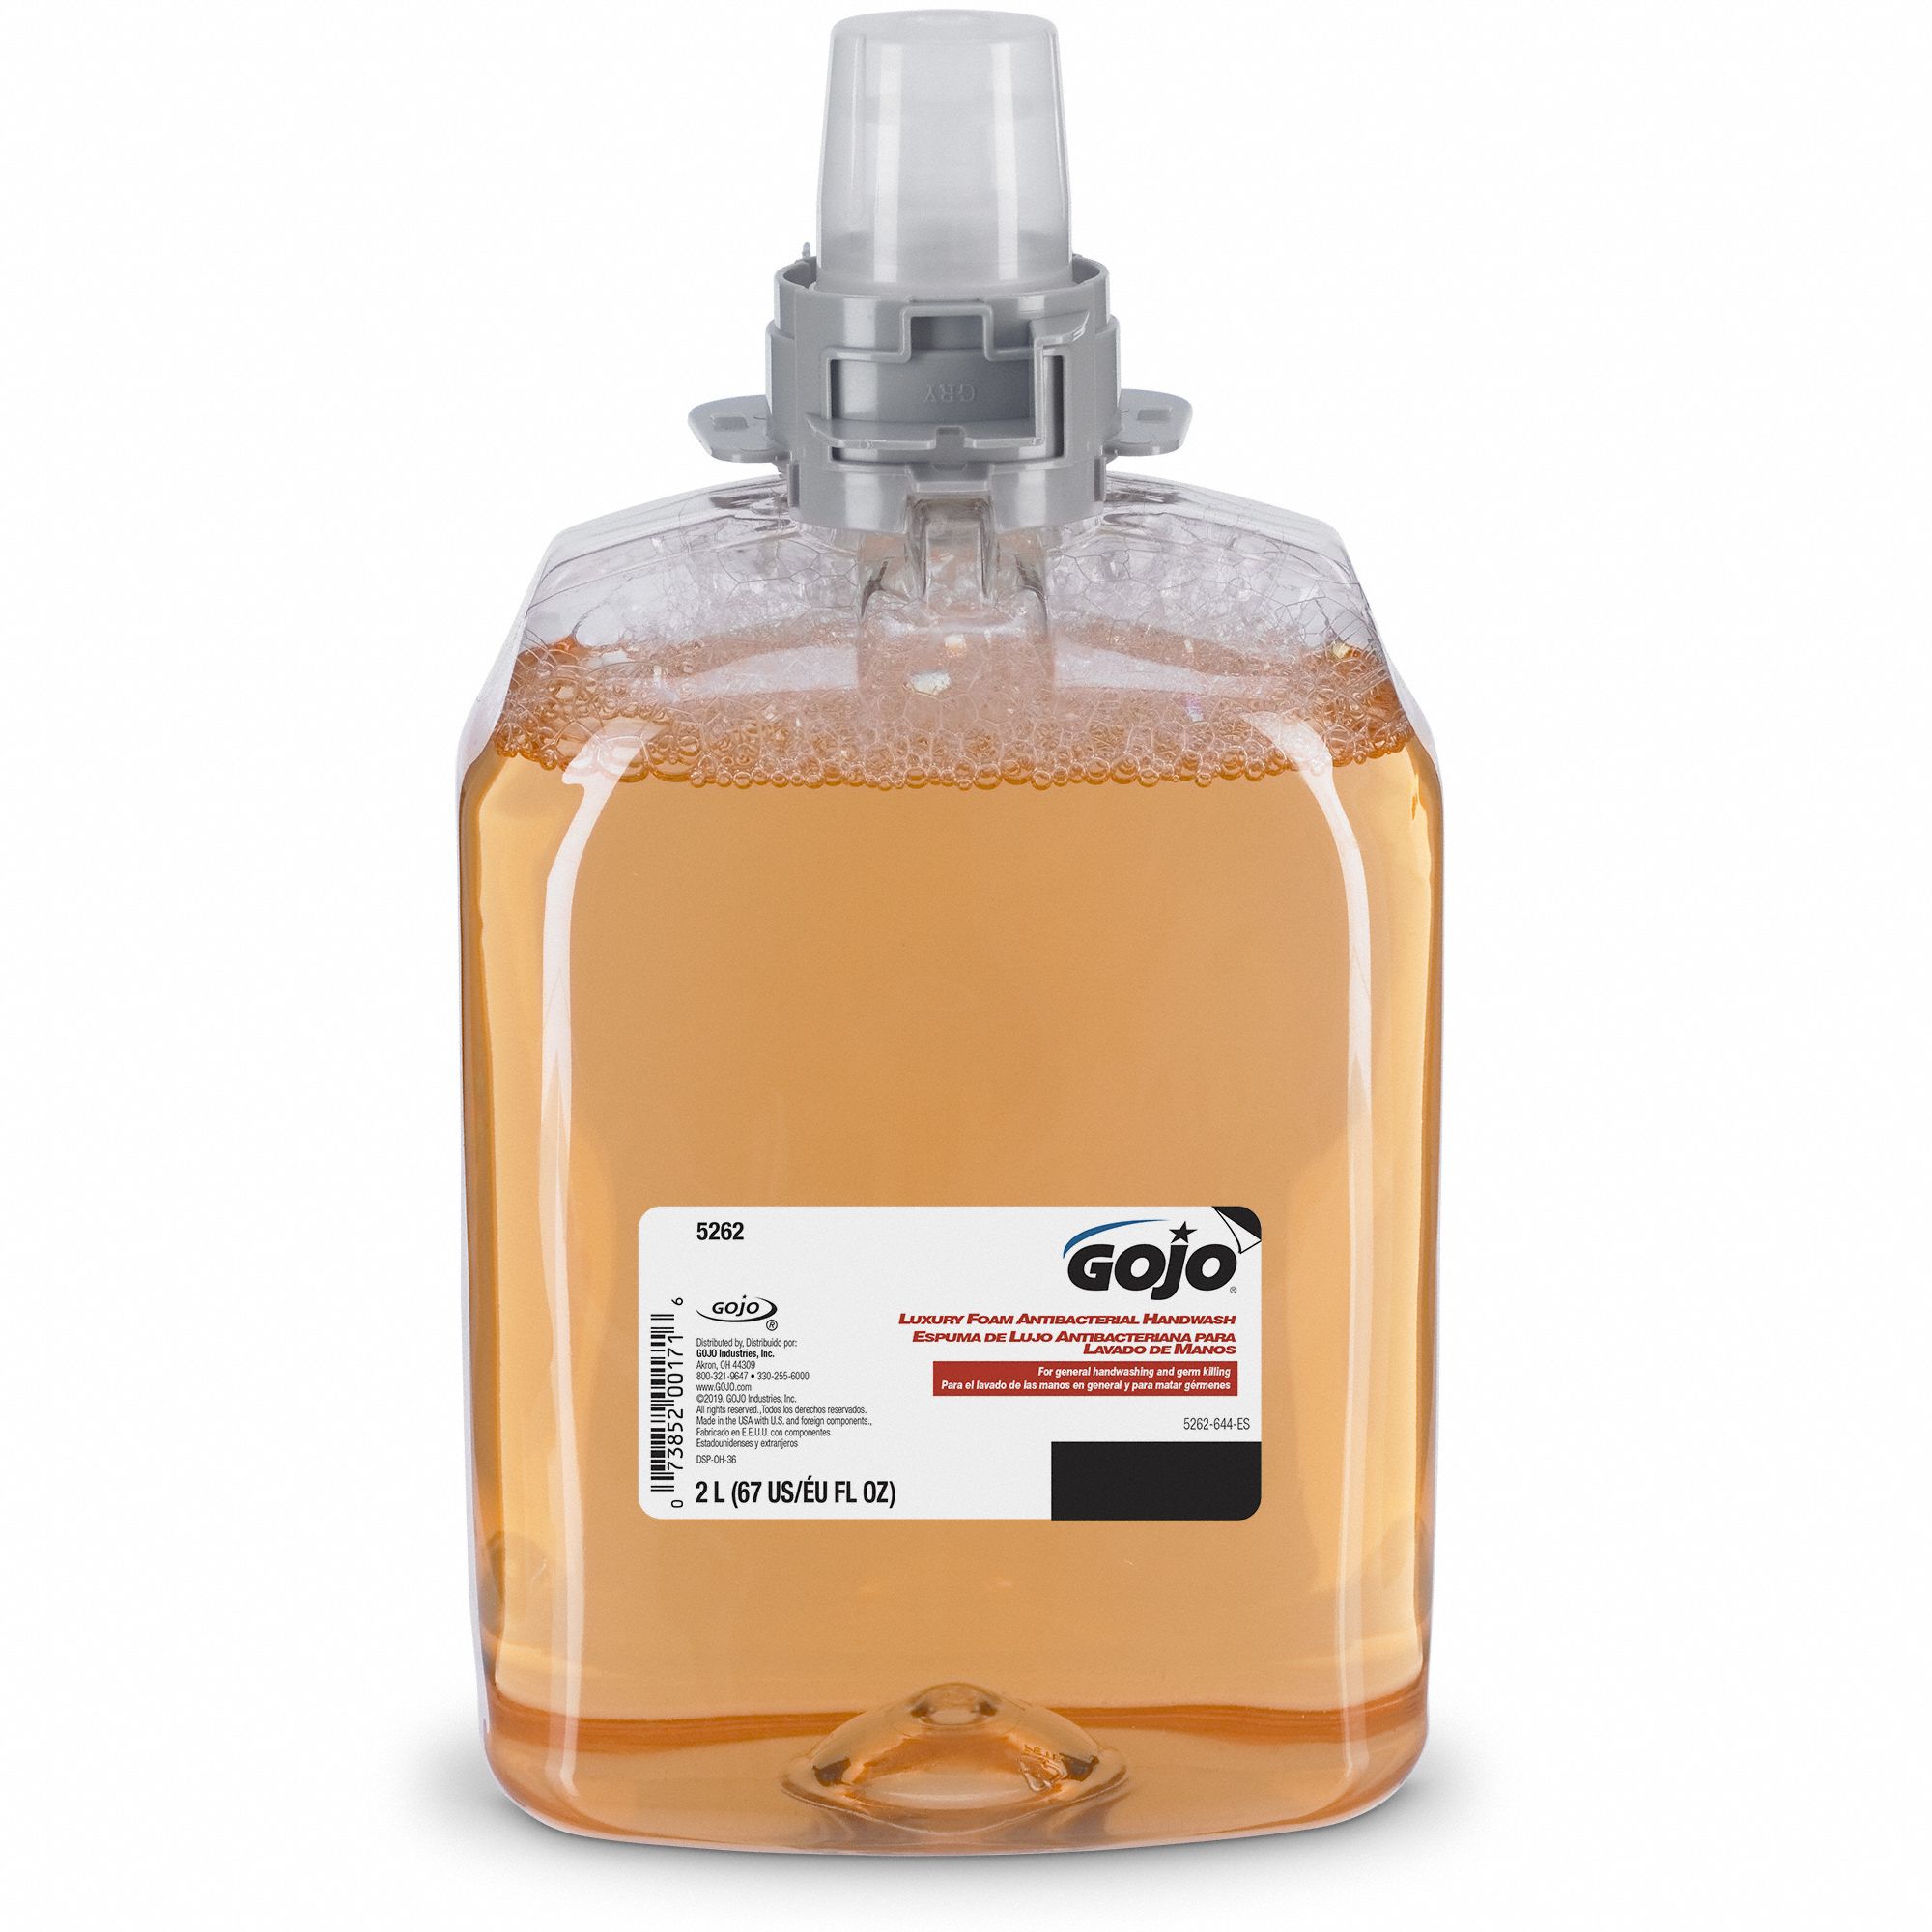 gojo-series-fmx-2-000-ml-hand-soap-3cb50-5262-02-grainger